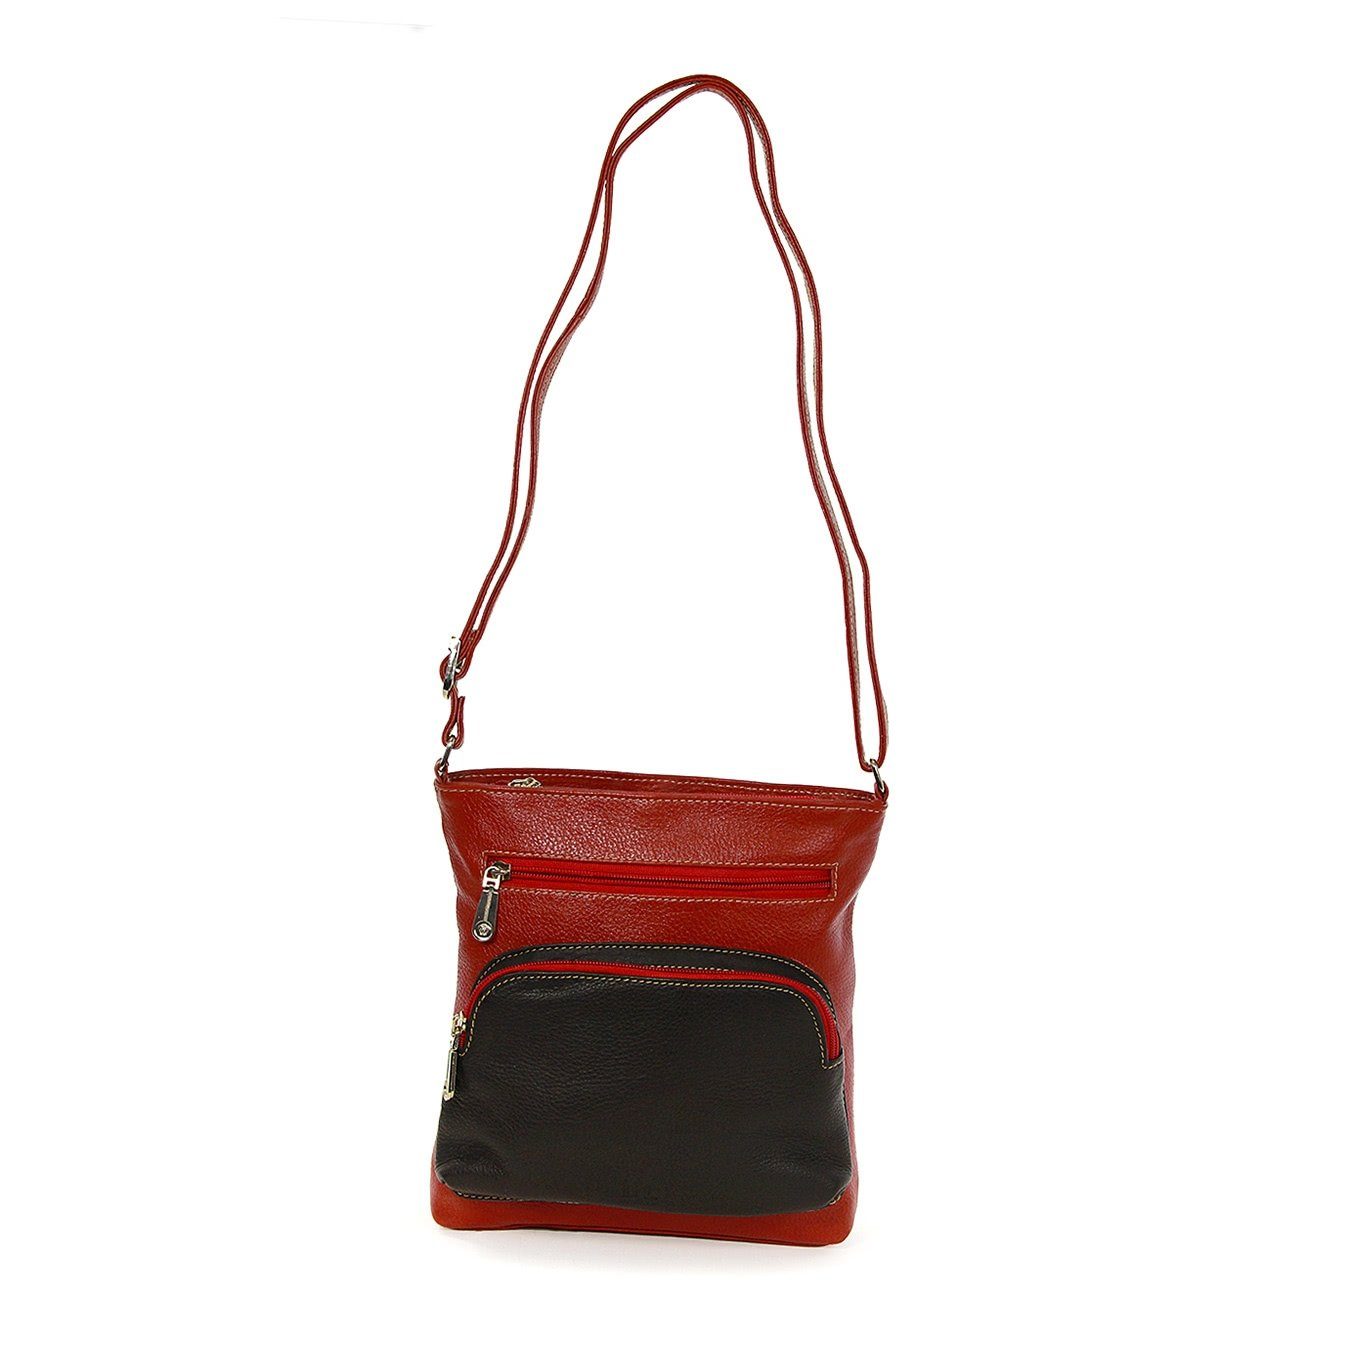 schwarz, Damen DrachenLeder Handtasche Echtleder Damen Handtasche DrachenLeder OTZ900X rot Tasche, (Handtasche), braun